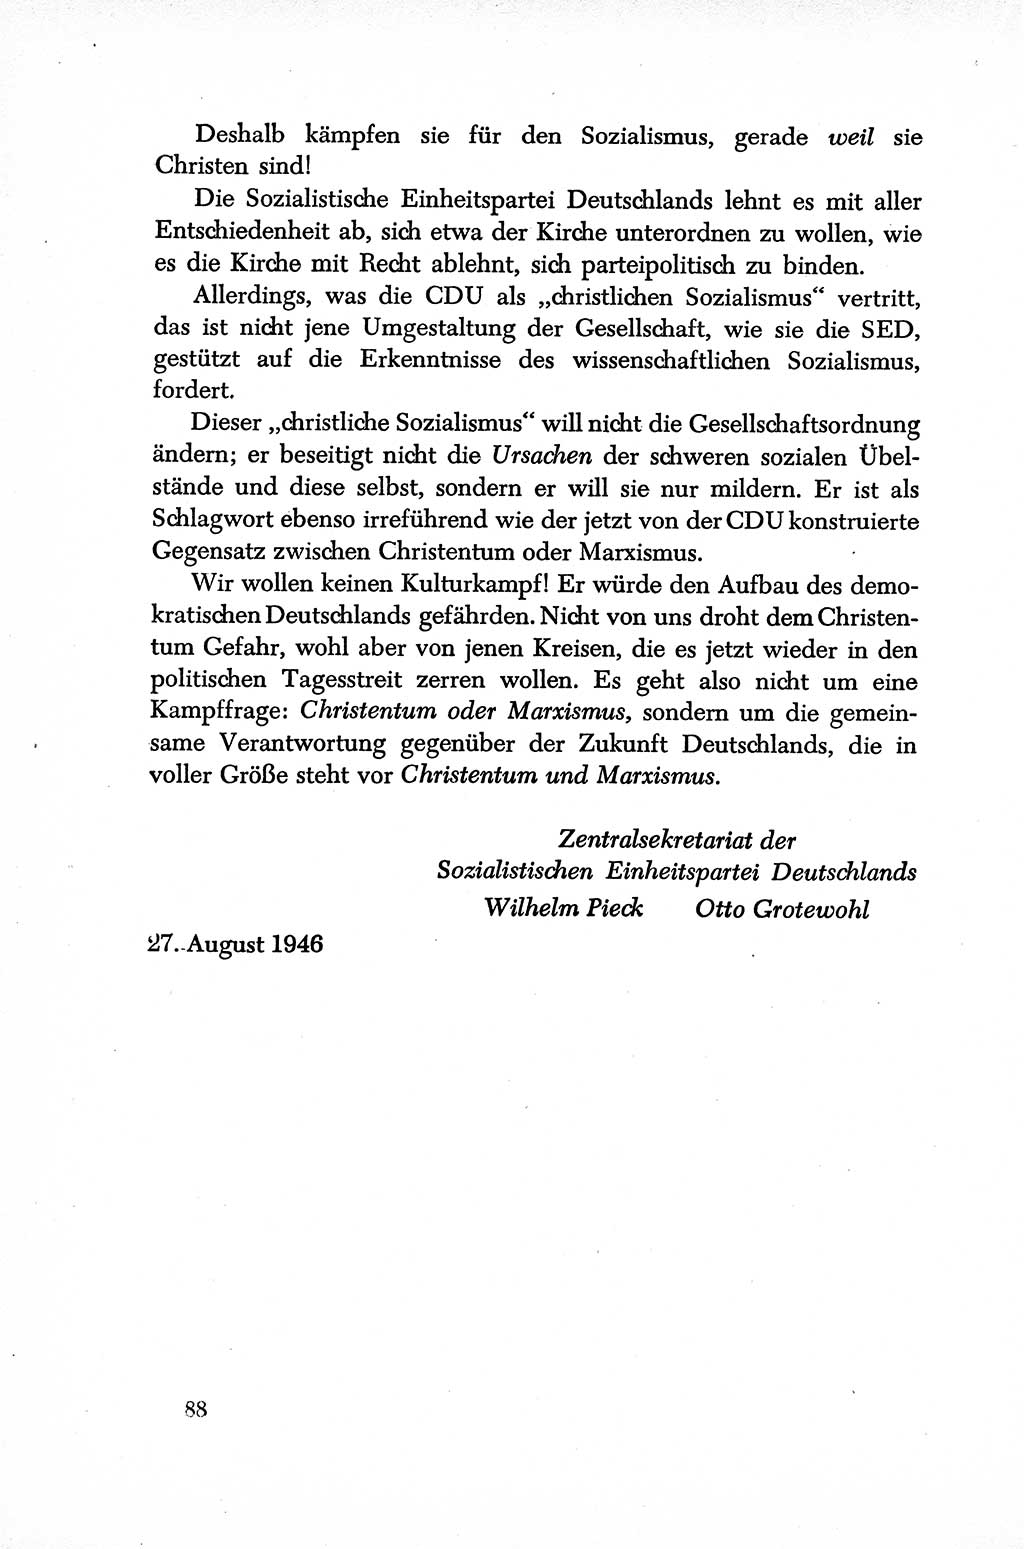 Dokumente der Sozialistischen Einheitspartei Deutschlands (SED) [Sowjetische Besatzungszone (SBZ) Deutschlands] 1946-1948, Seite 88 (Dok. SED SBZ Dtl. 1946-1948, S. 88)